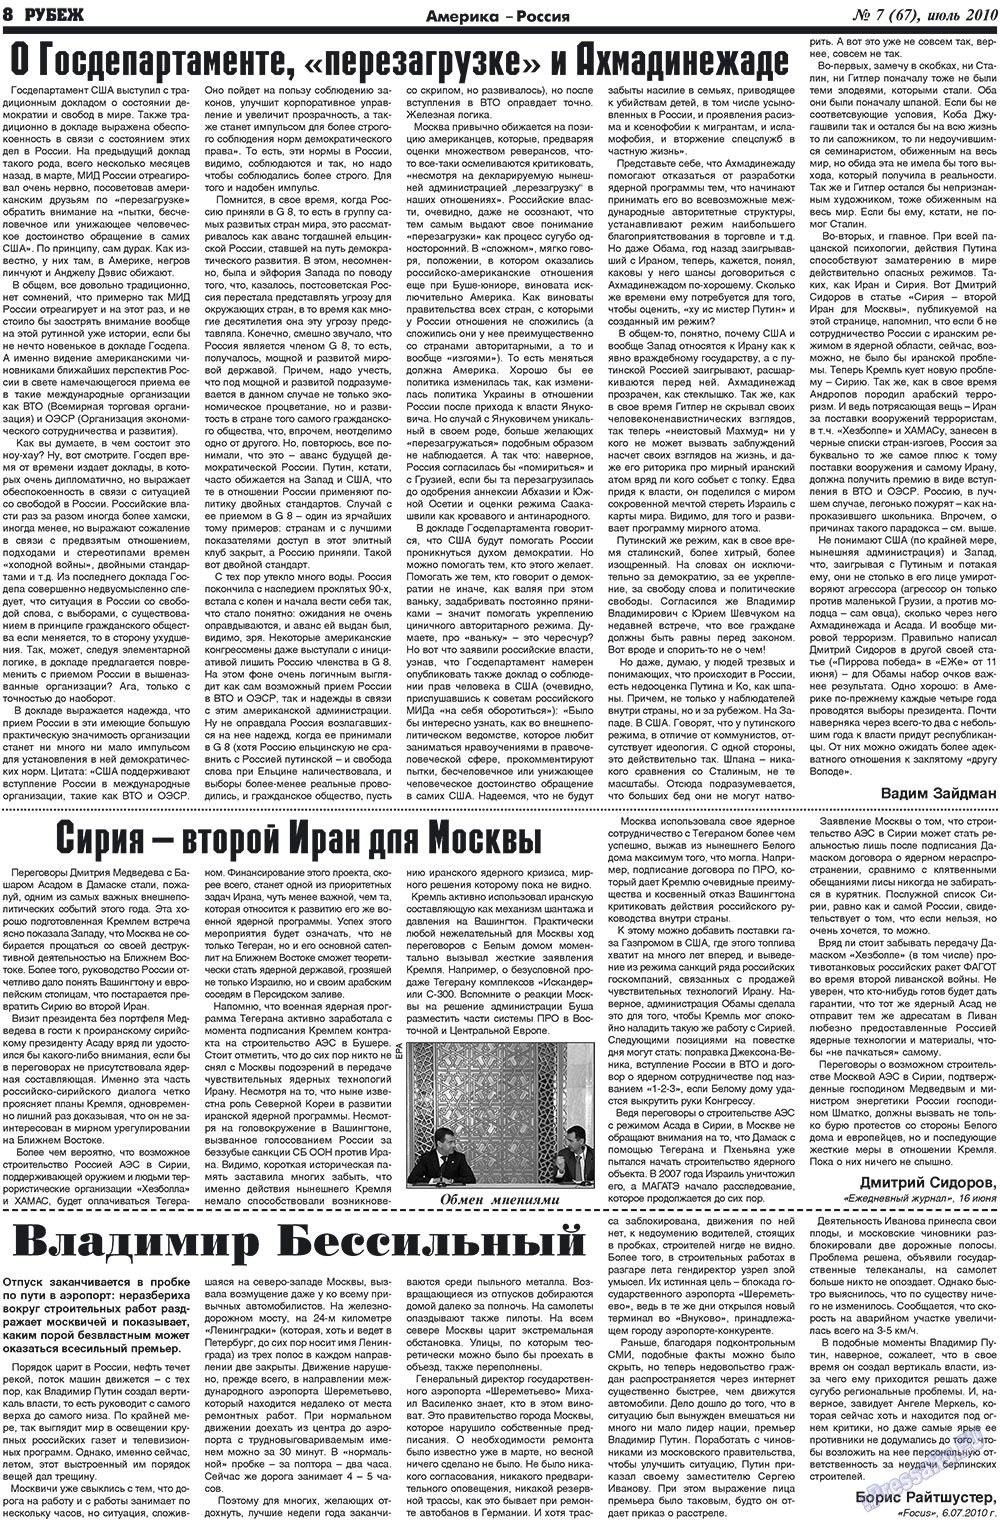 Рубеж (газета). 2010 год, номер 7, стр. 8